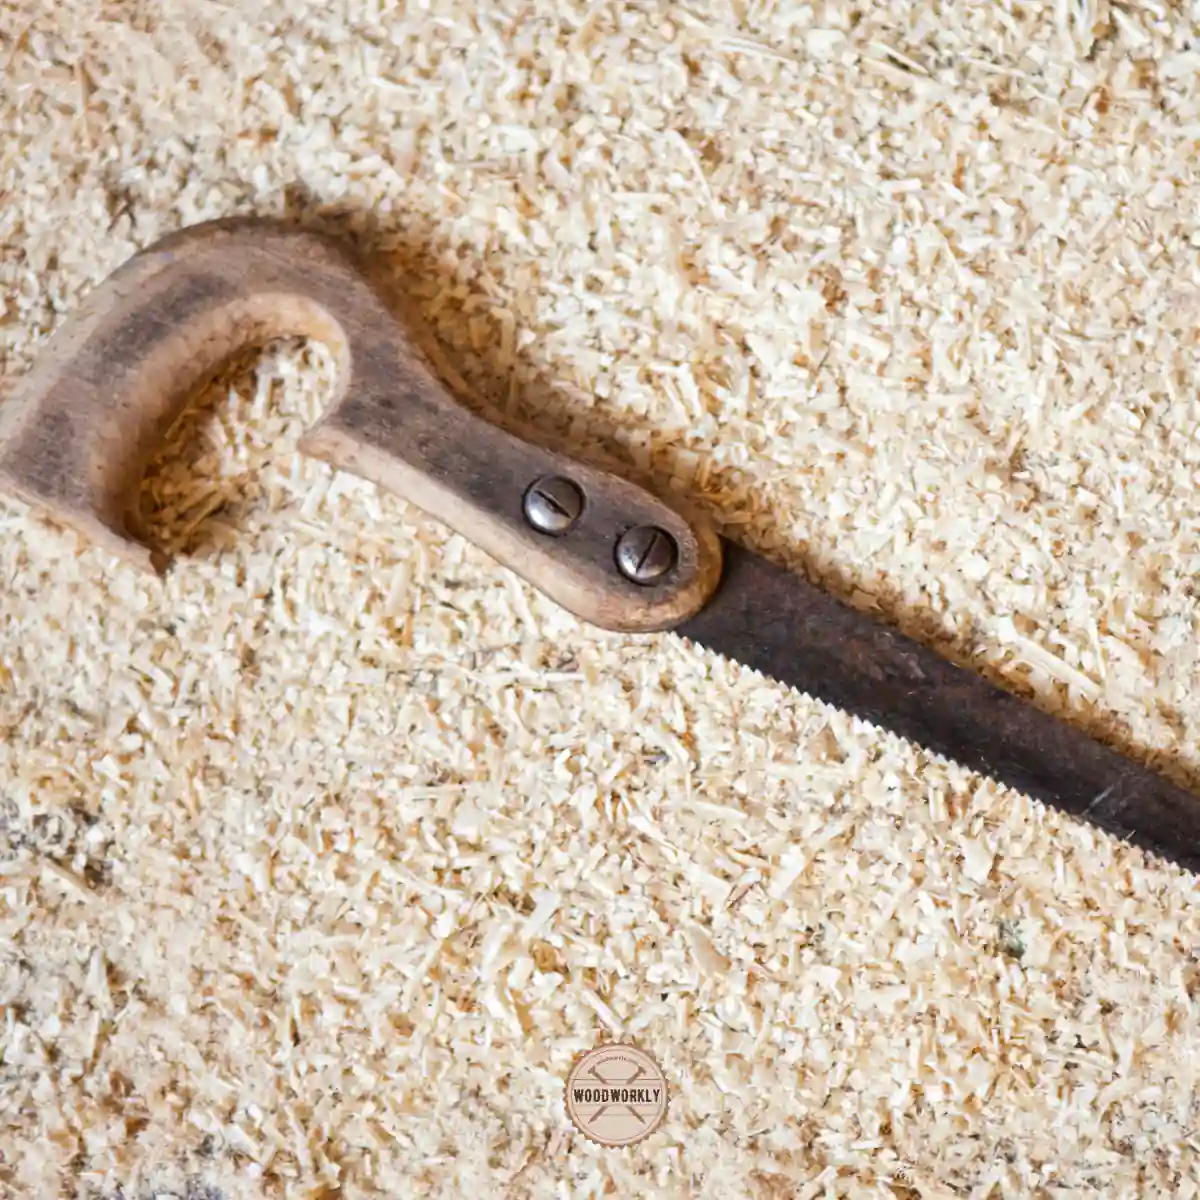 Keyhole saw